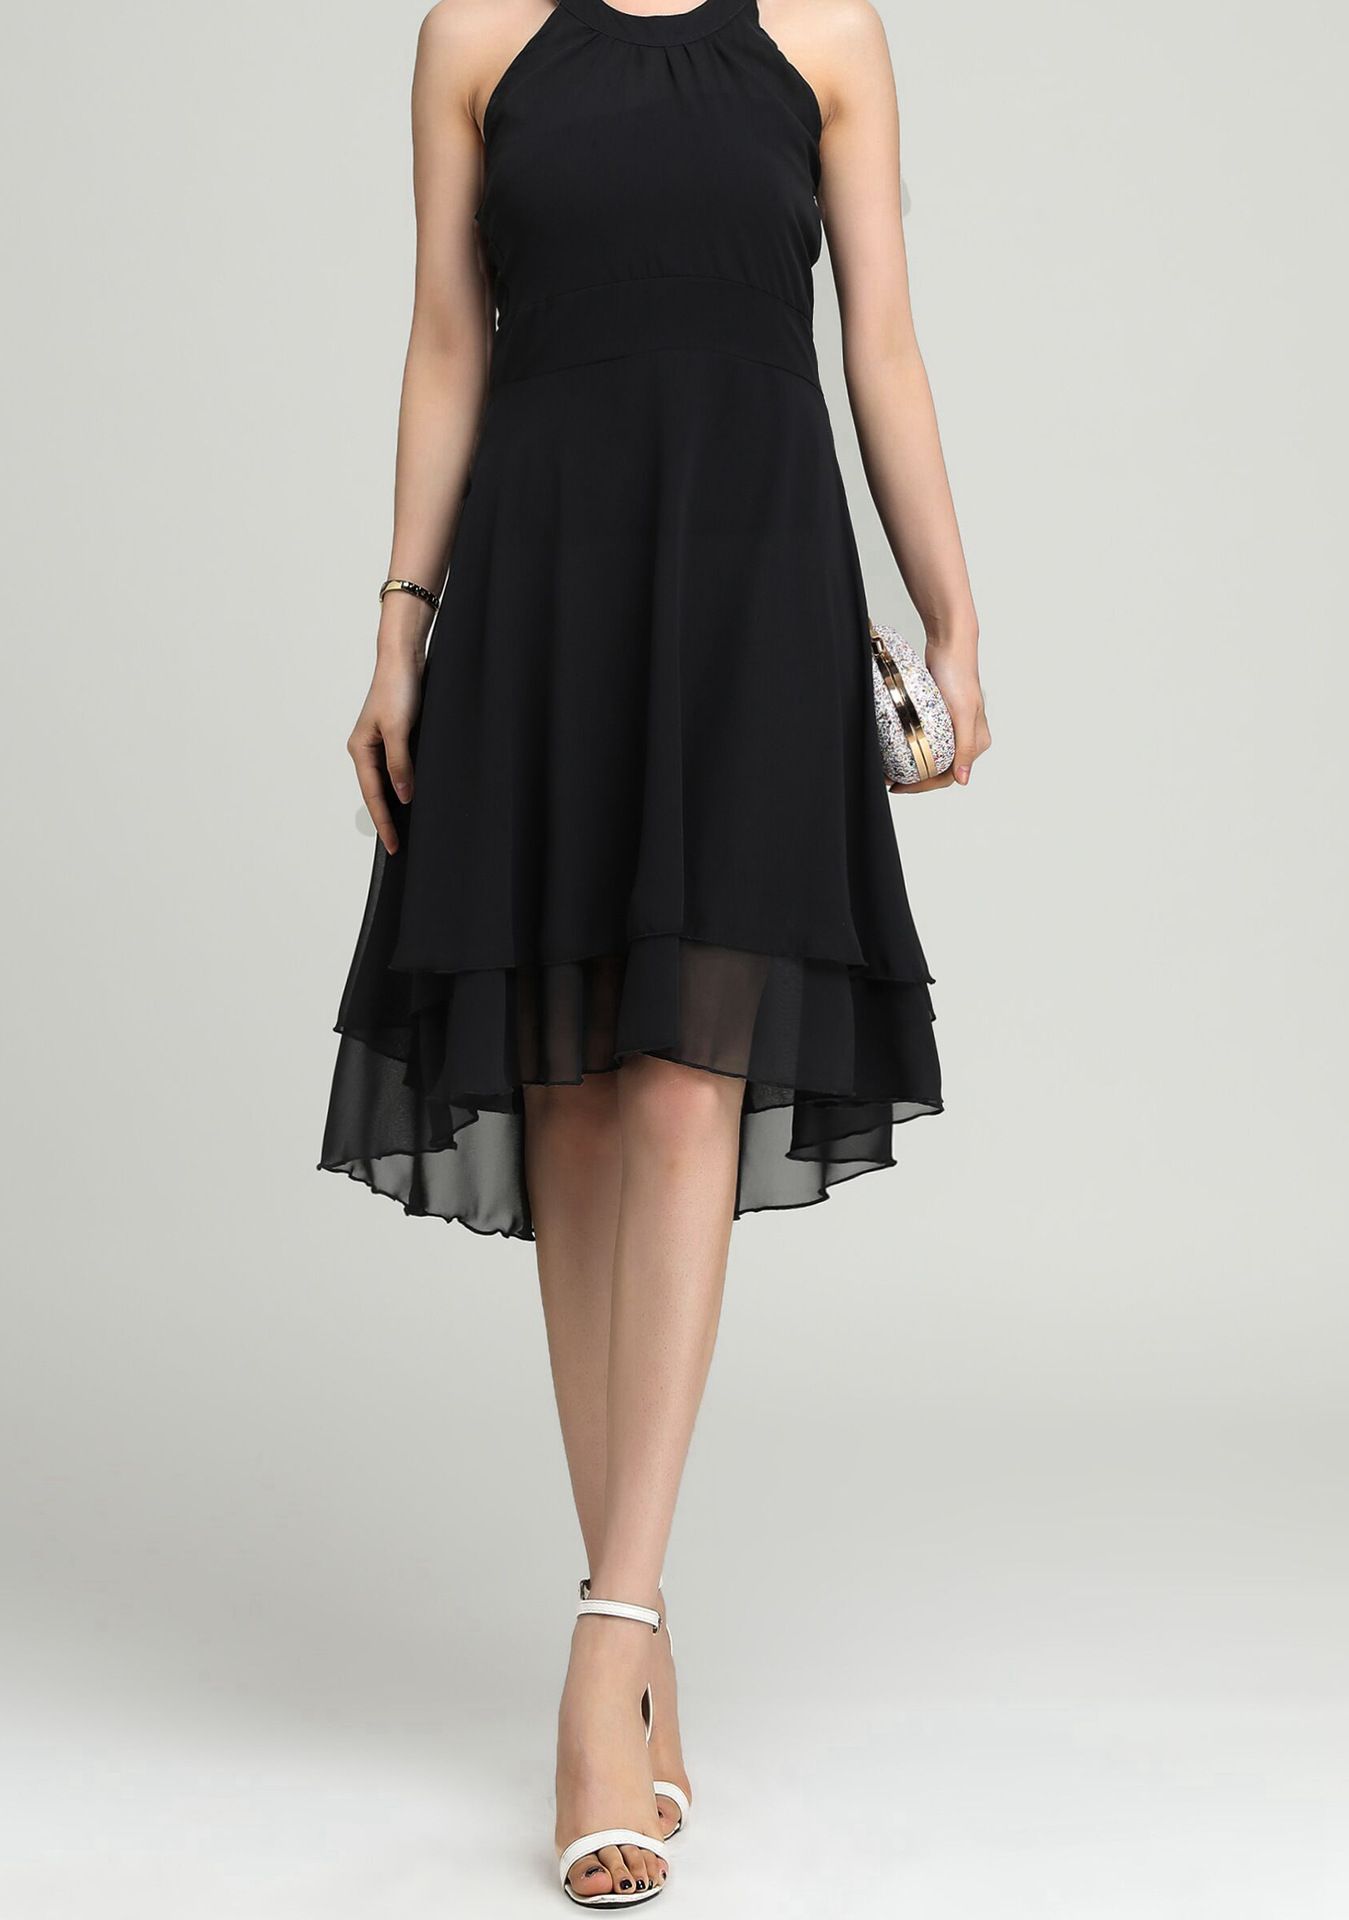 layered cutout back sleeveless black chiffon dress